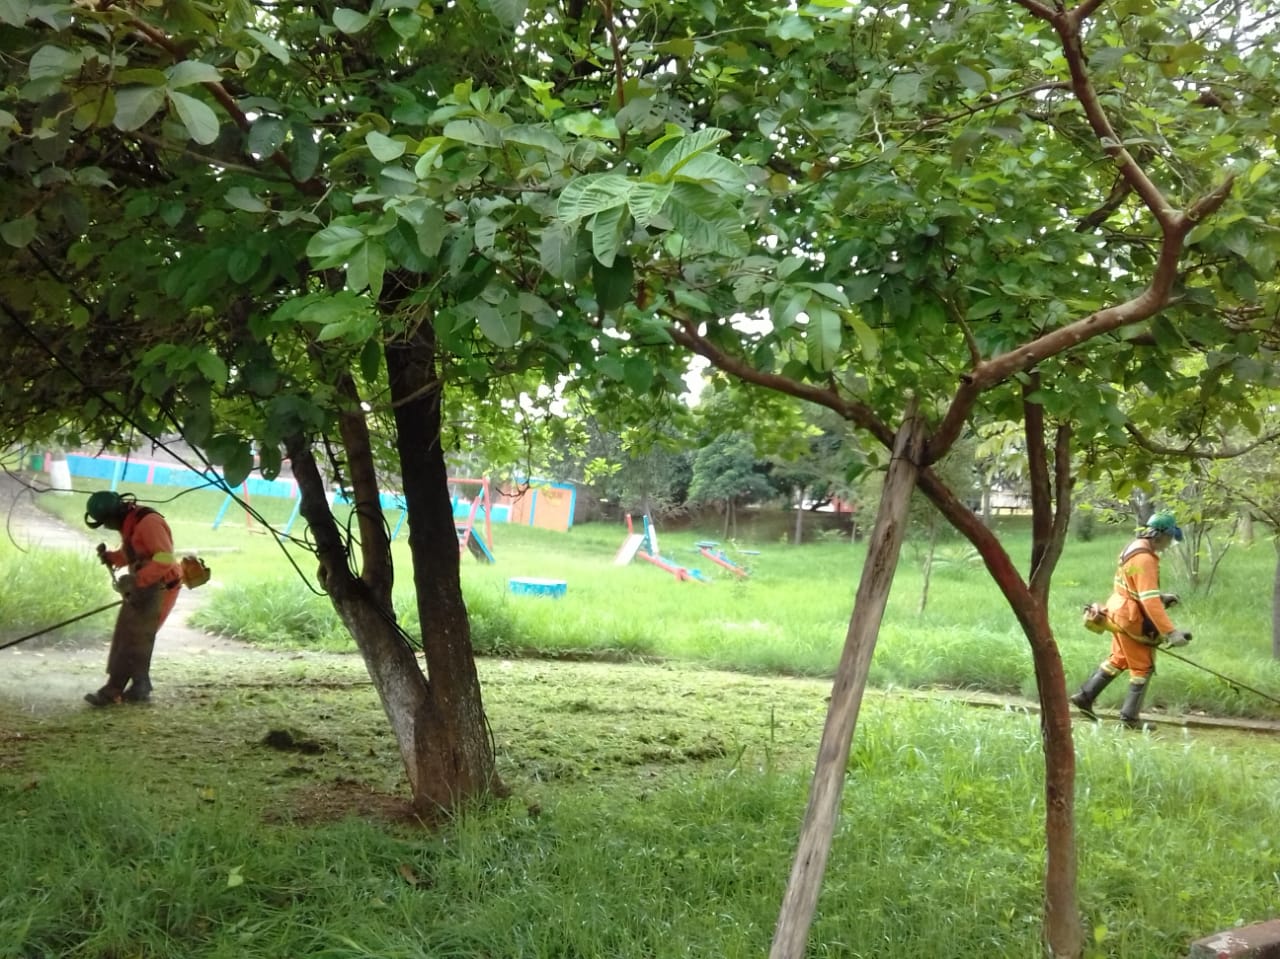 #PraCegoVer - Dois trabalhadores, um em cada lado da foto, cortam grama na via. Em primeiro plano, veem-se árvores. Ao fundo, brinquedos de playground.